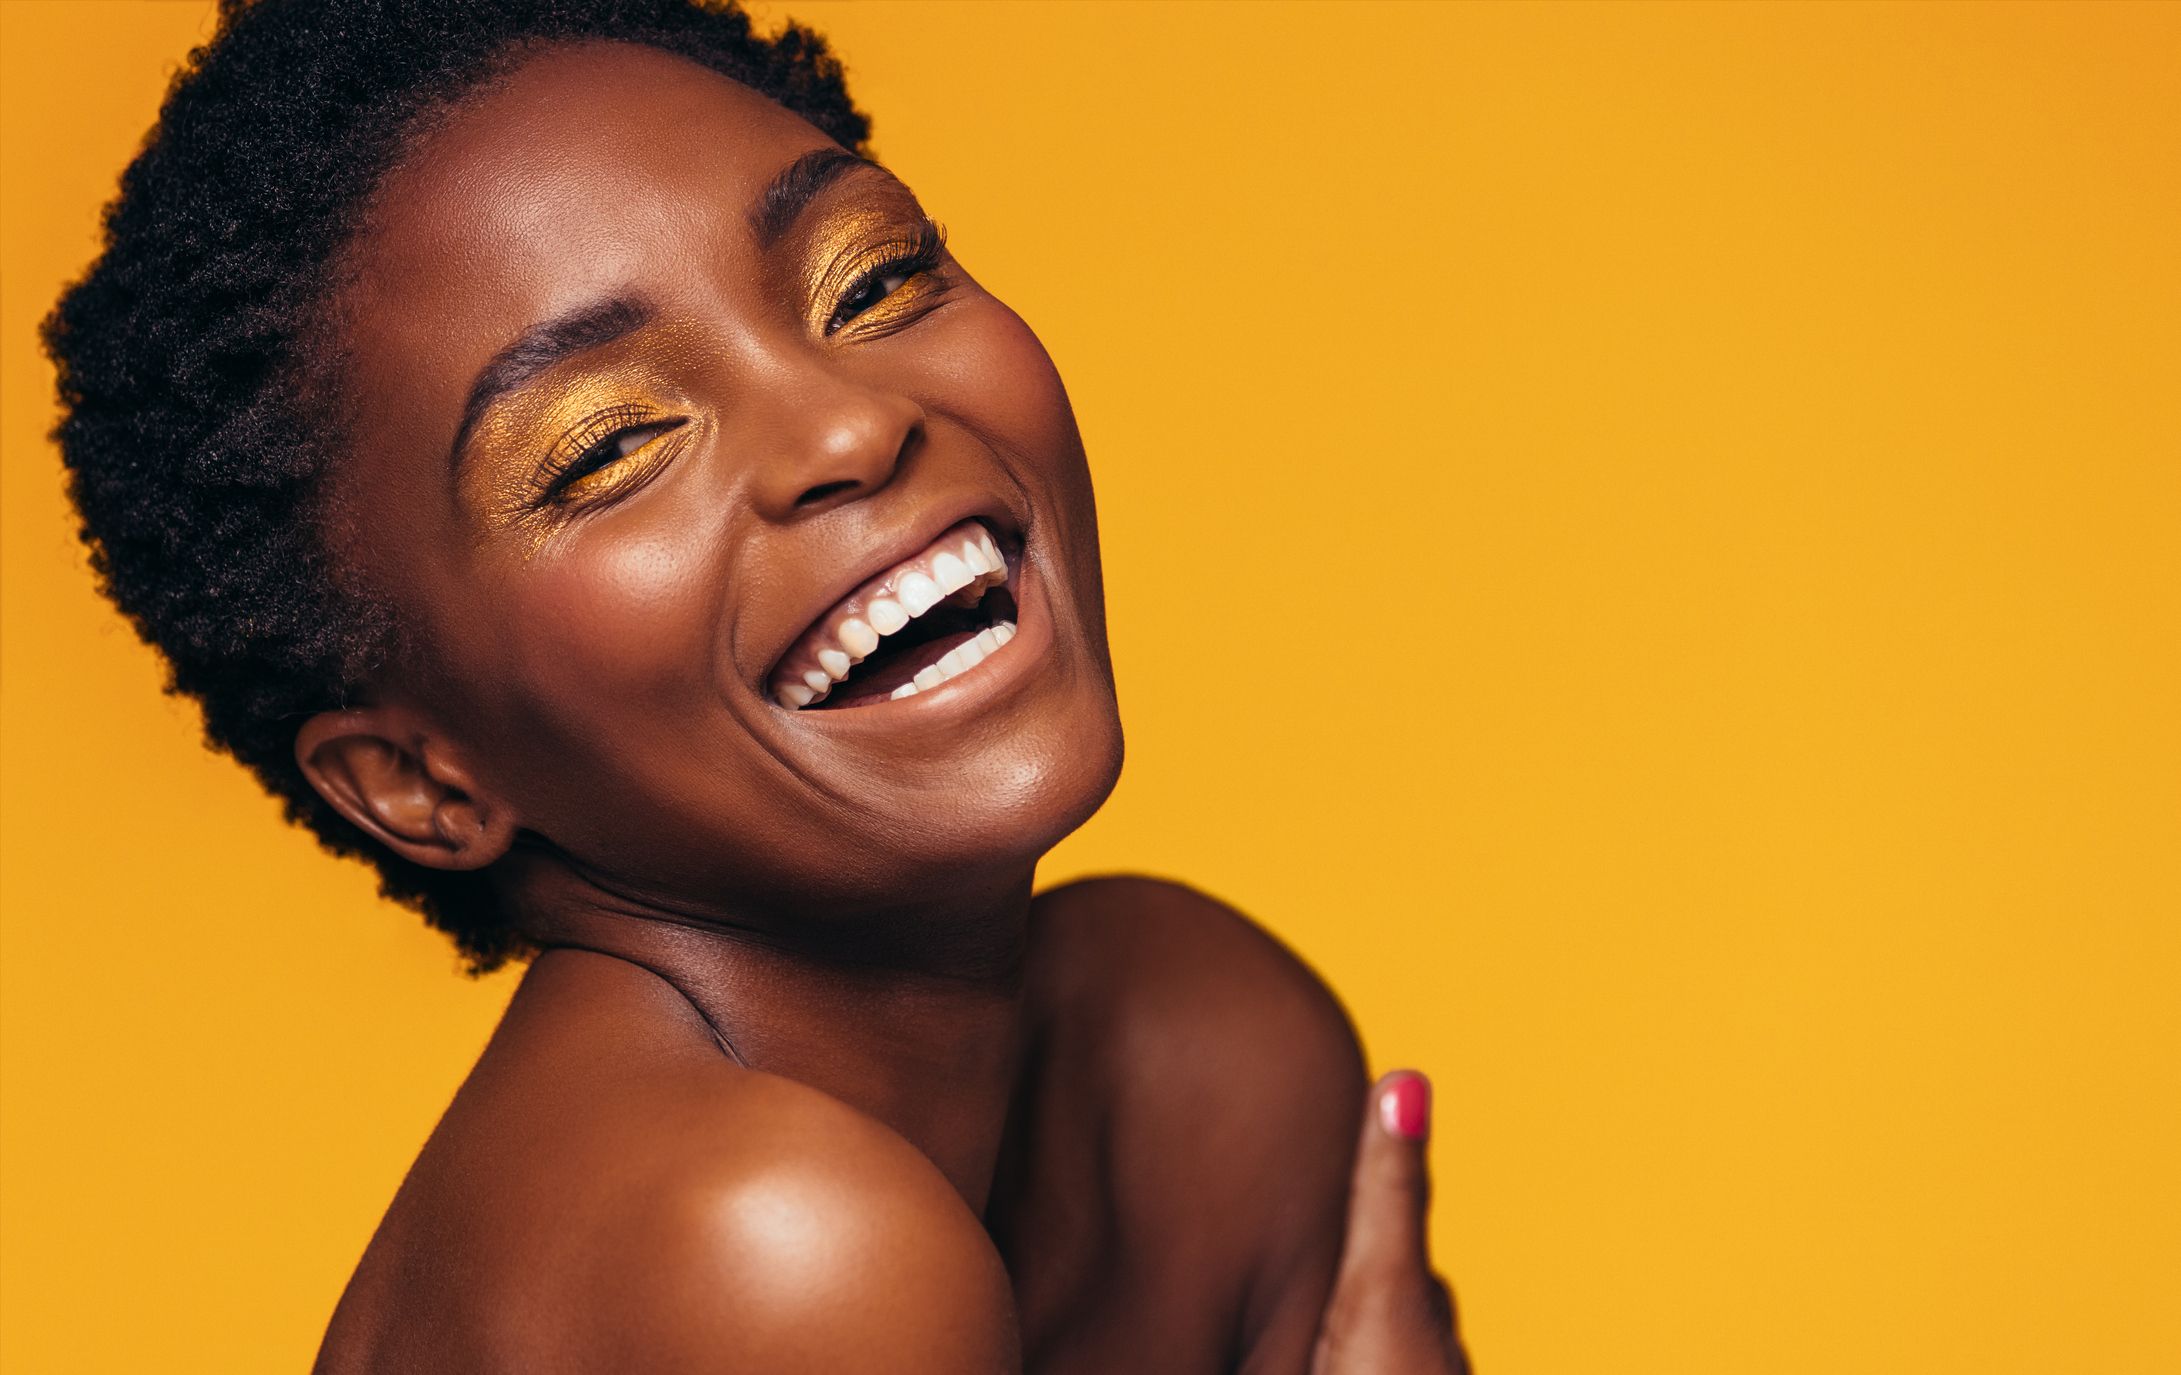 10 Best Eyeshadows For Dark Skin 2020